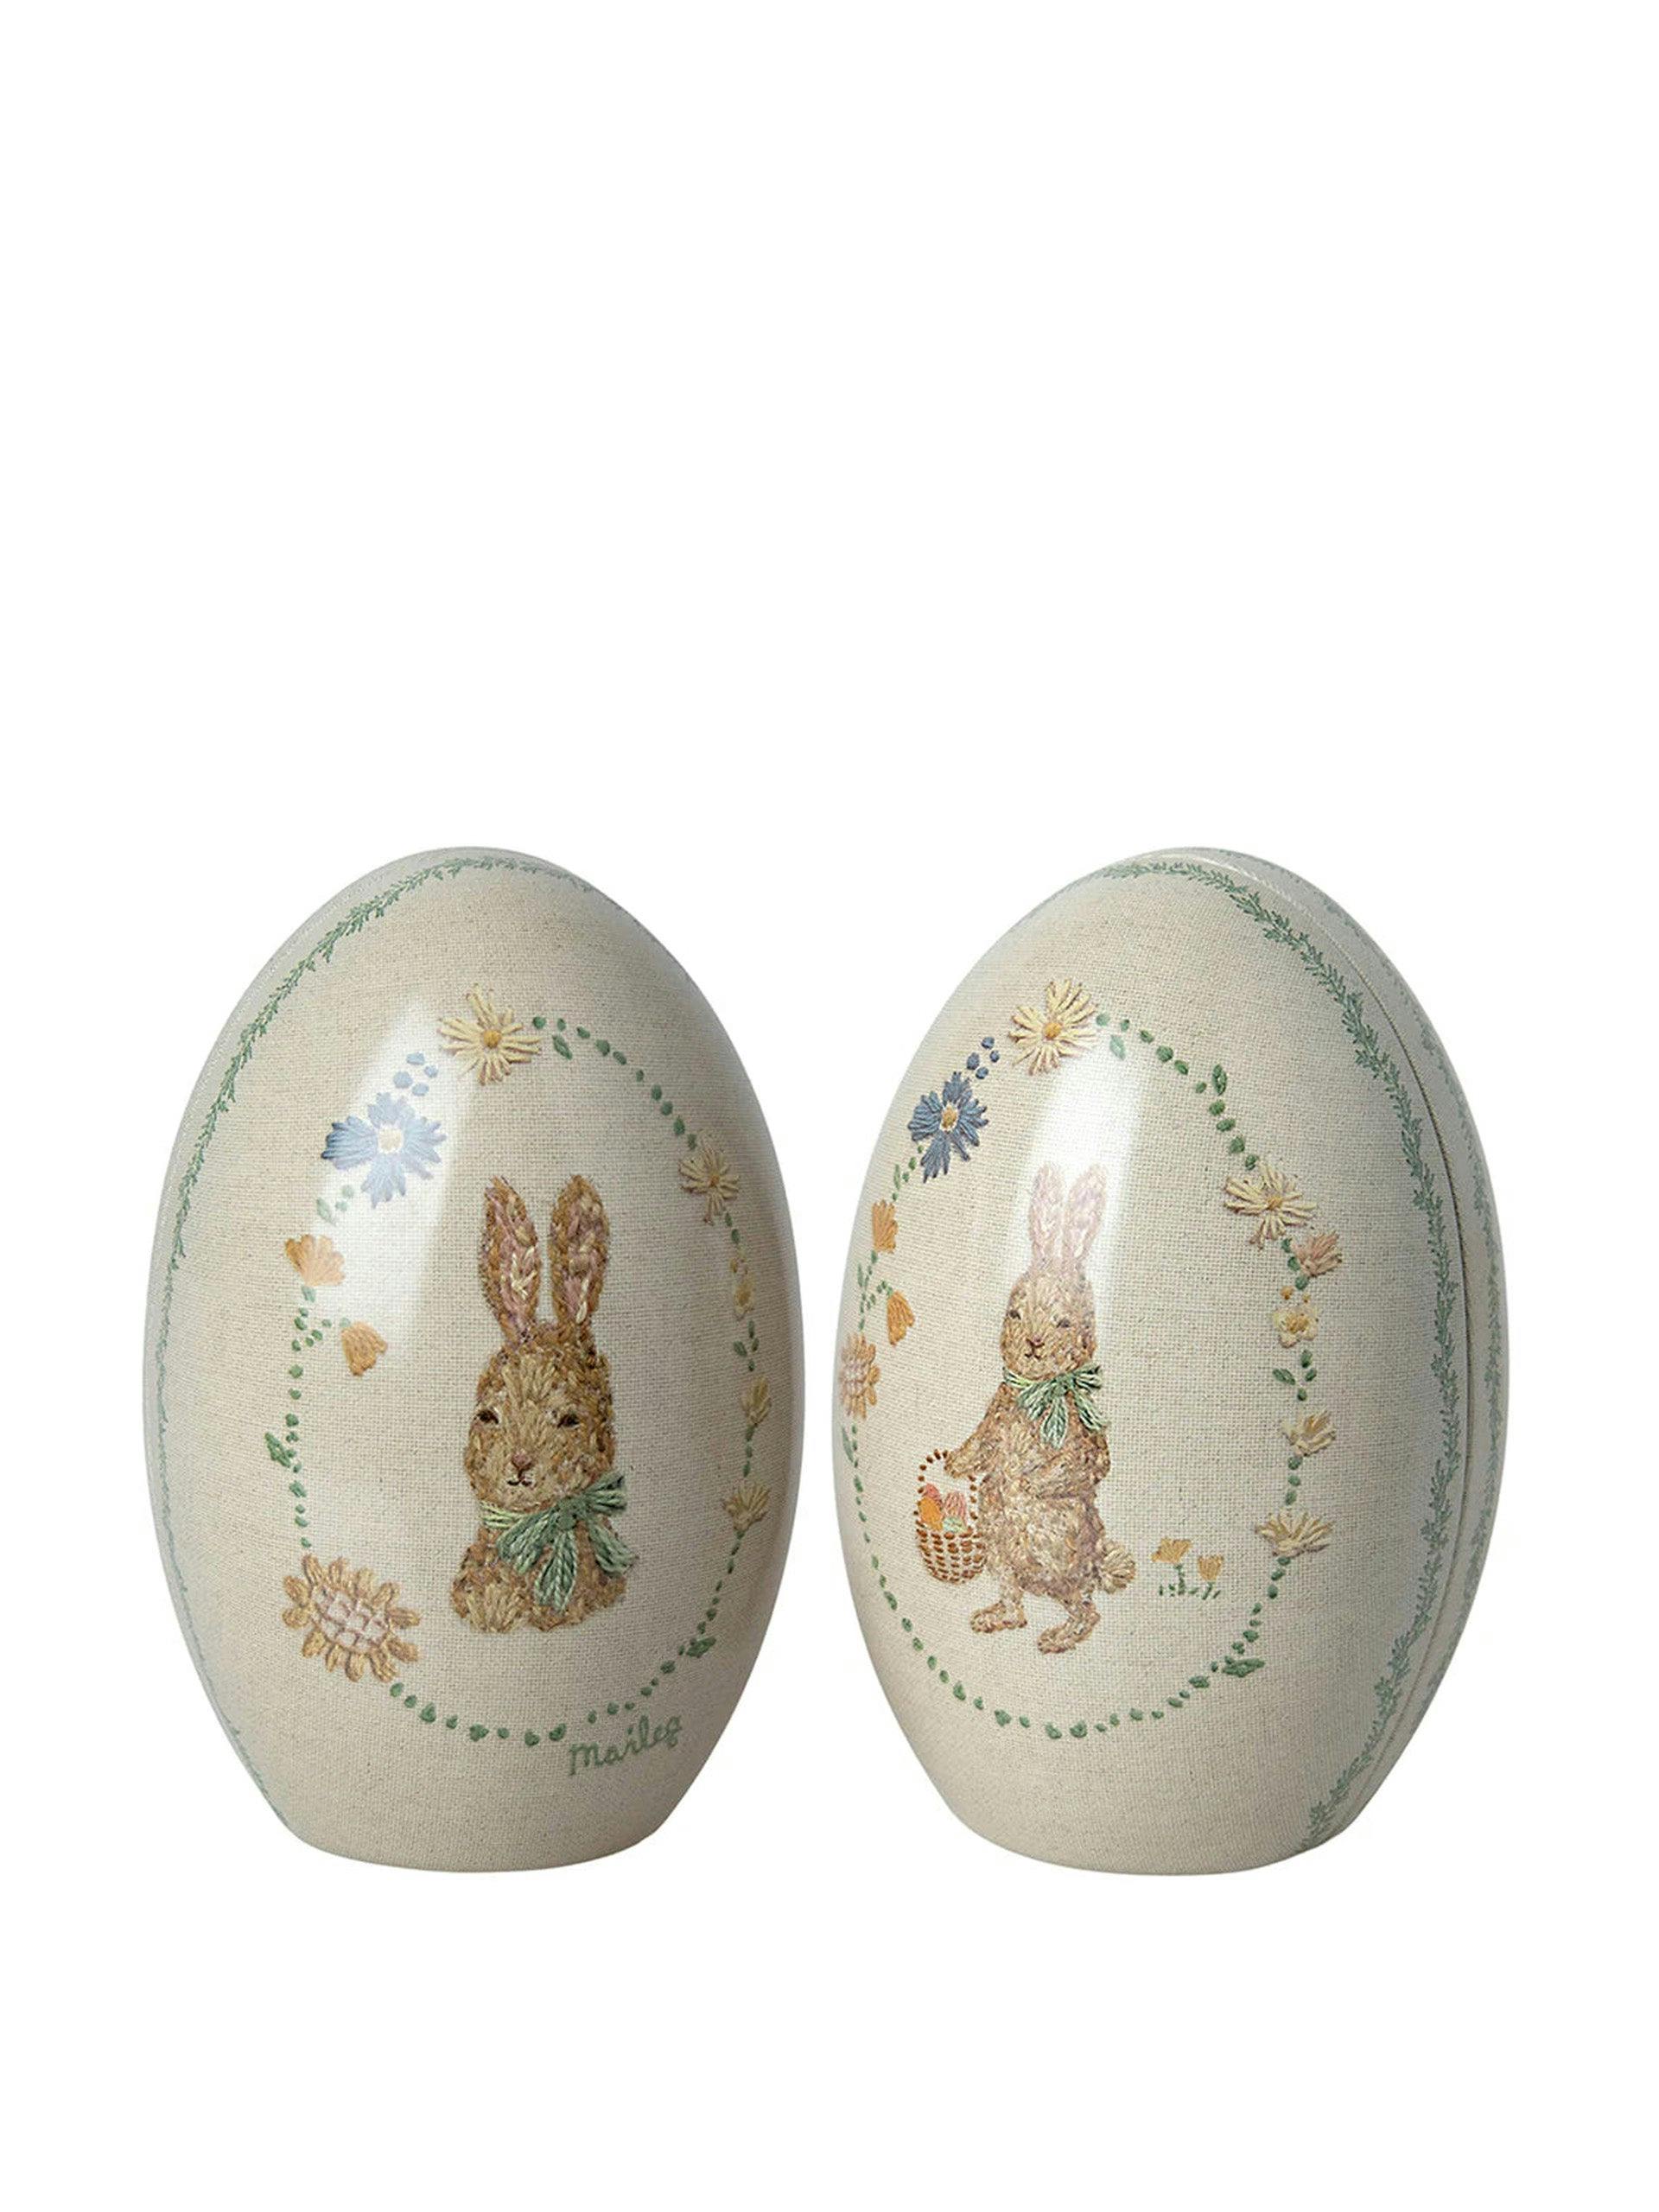 Easter egg ornament